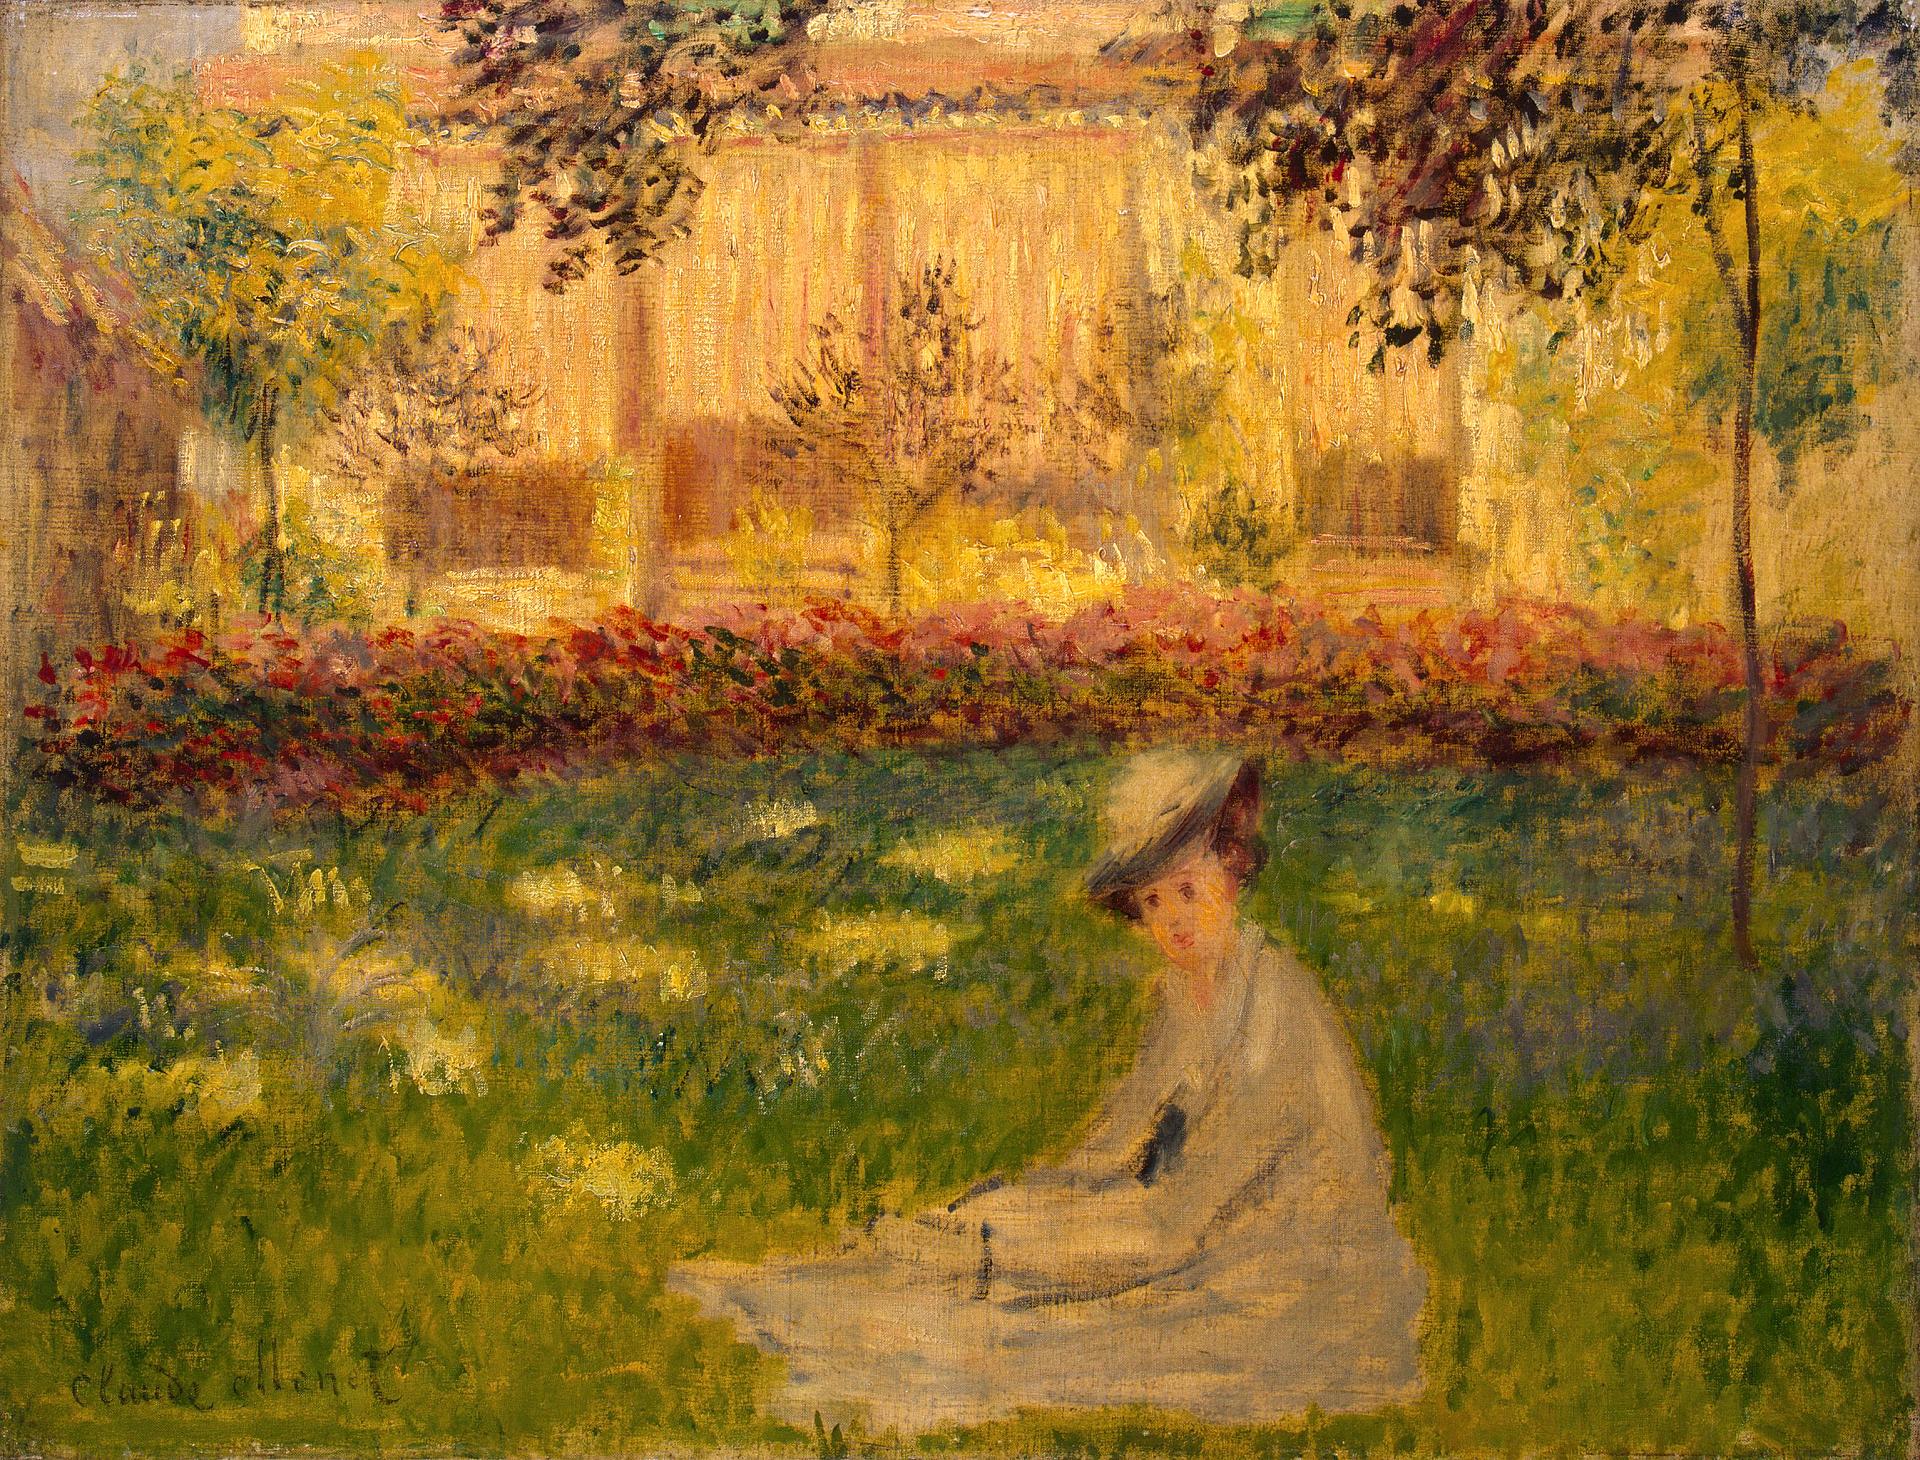 Клод Моне. "Женщина, сидящая в саду". 1876. Эрмитаж, Санкт-Петербург.